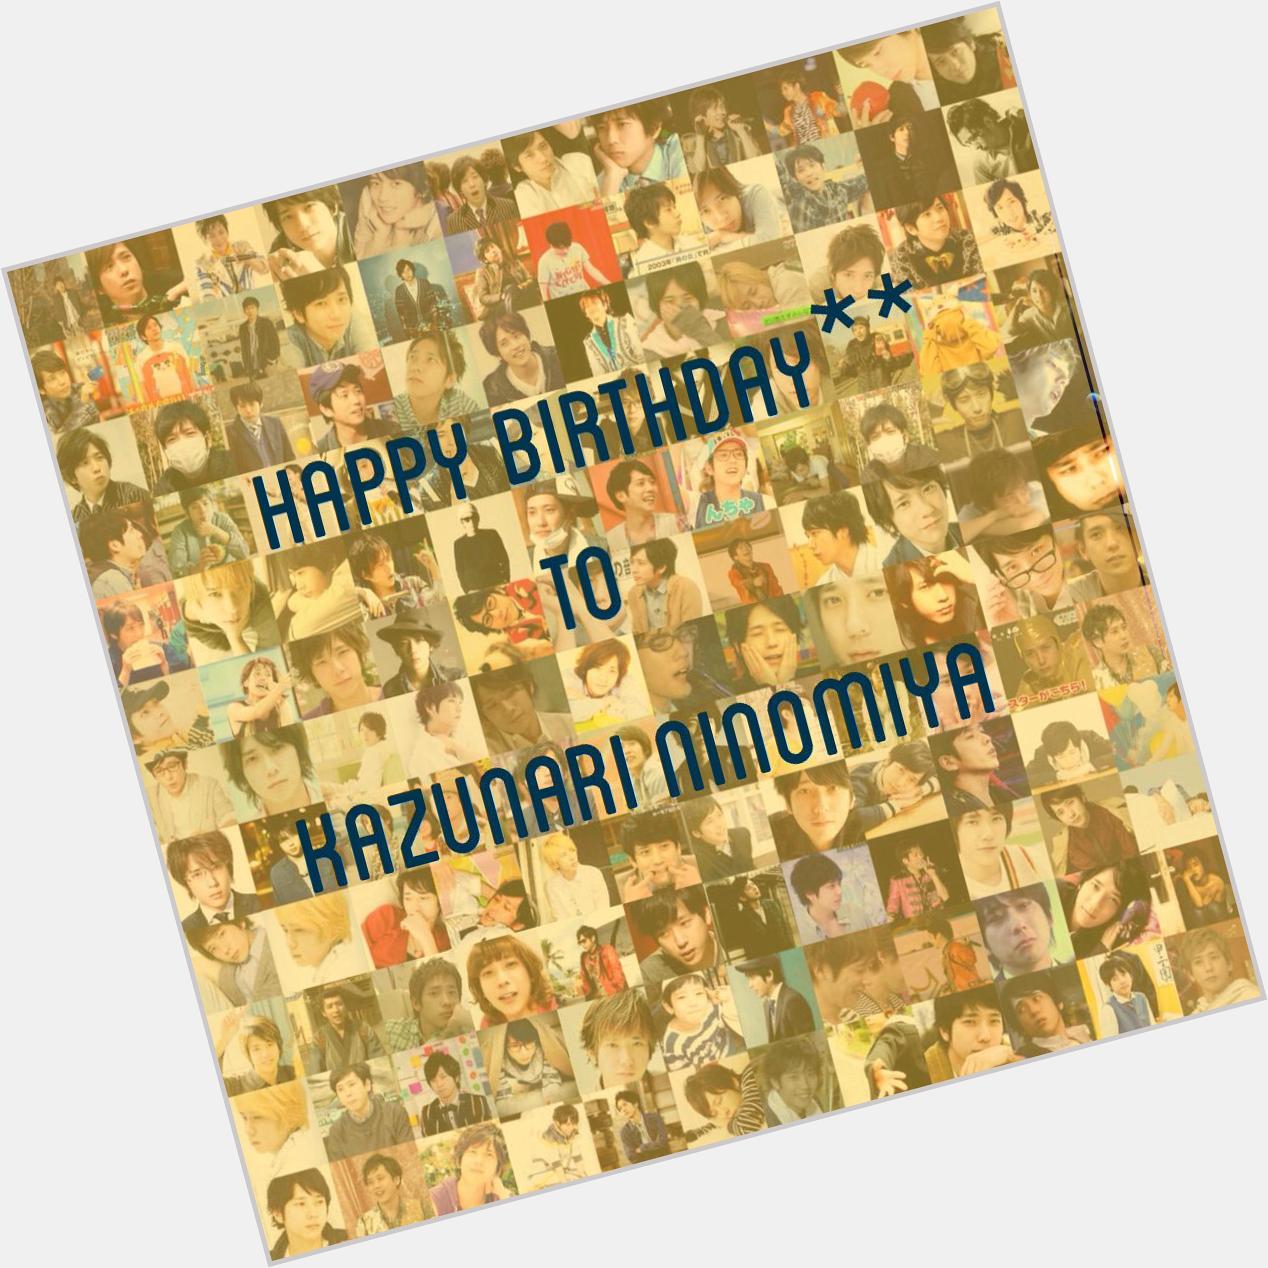 Kazunari Ninomiya
happy birthday**           